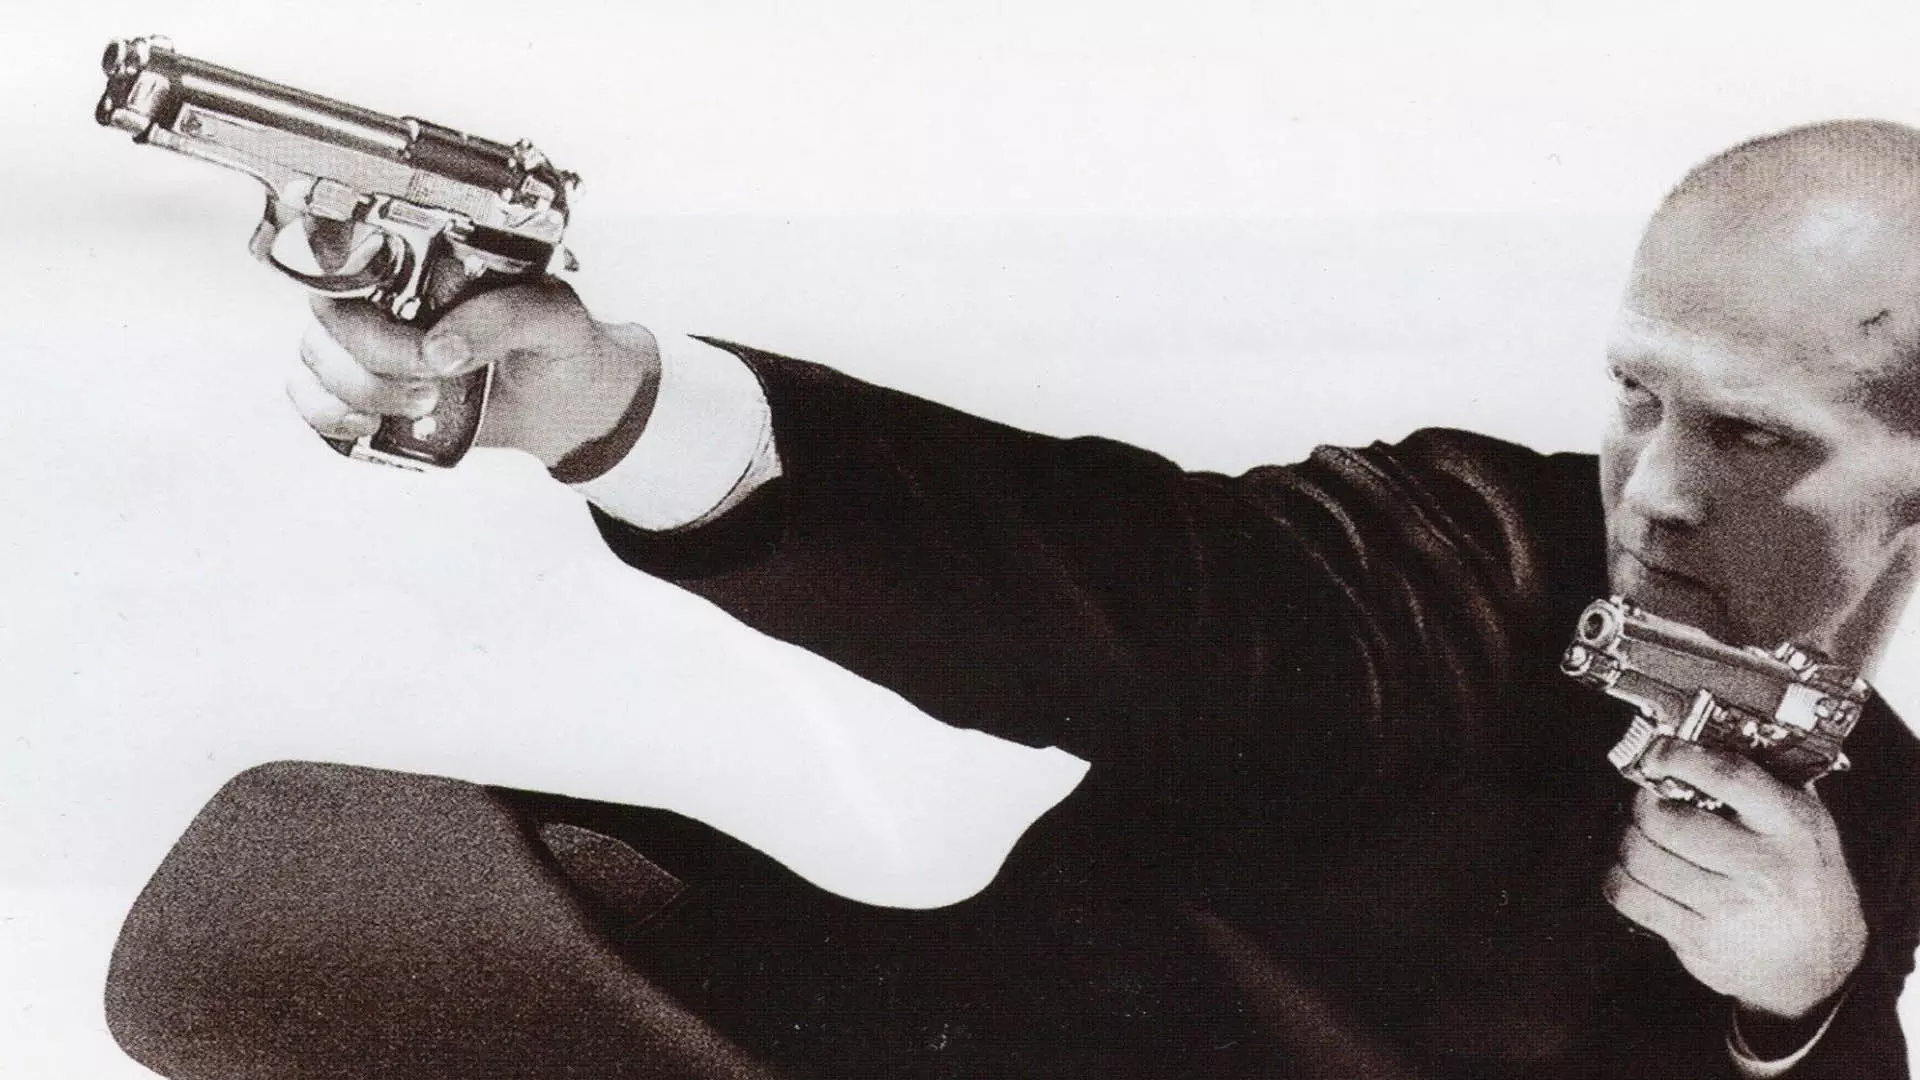 جیسون استاتهام در کاور فیلم ترانسپورتر درحال شلیک اسلحه